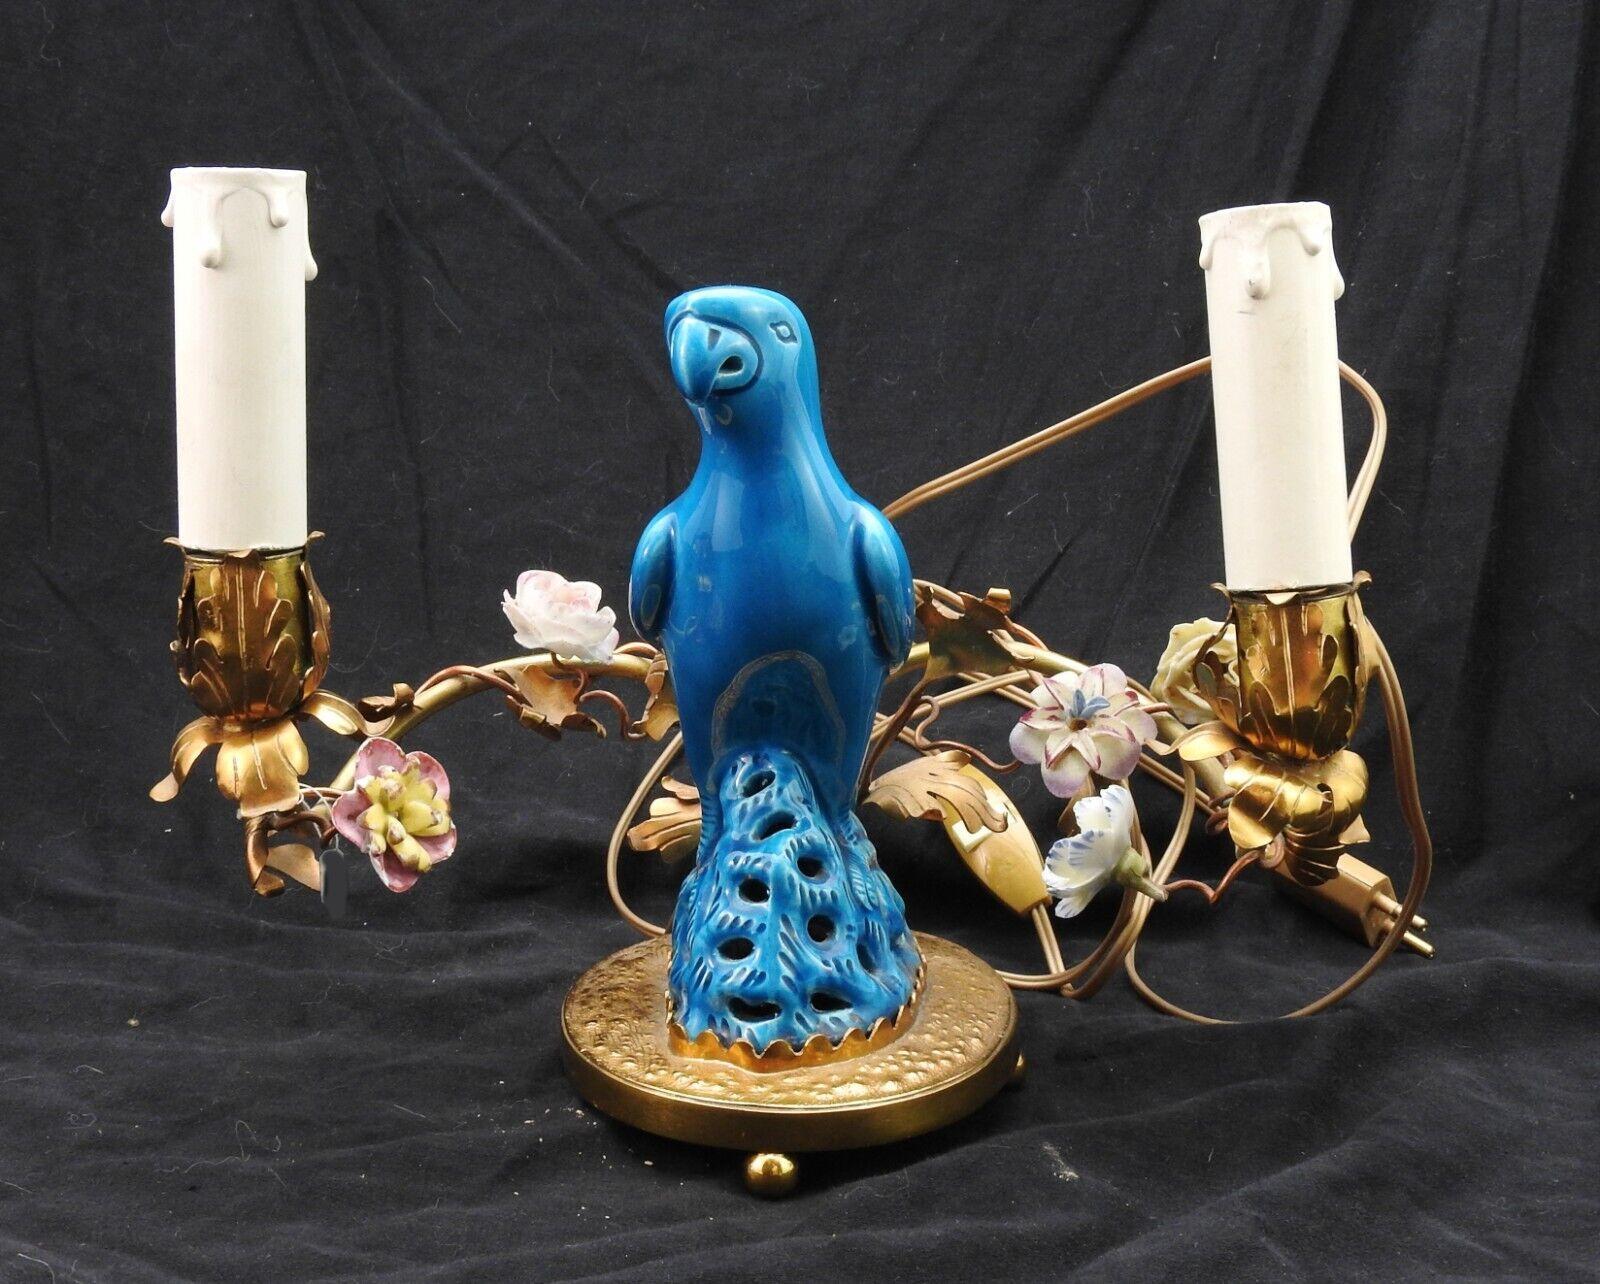 c1890 Lampe de table de style Louis XVI en bronze doré, perroquet en porcelaine bleue de Chine parmi des fleurs de SAX en porcelaine et une vigne en bronze. Il s'agit d'une très belle lampe de collection.